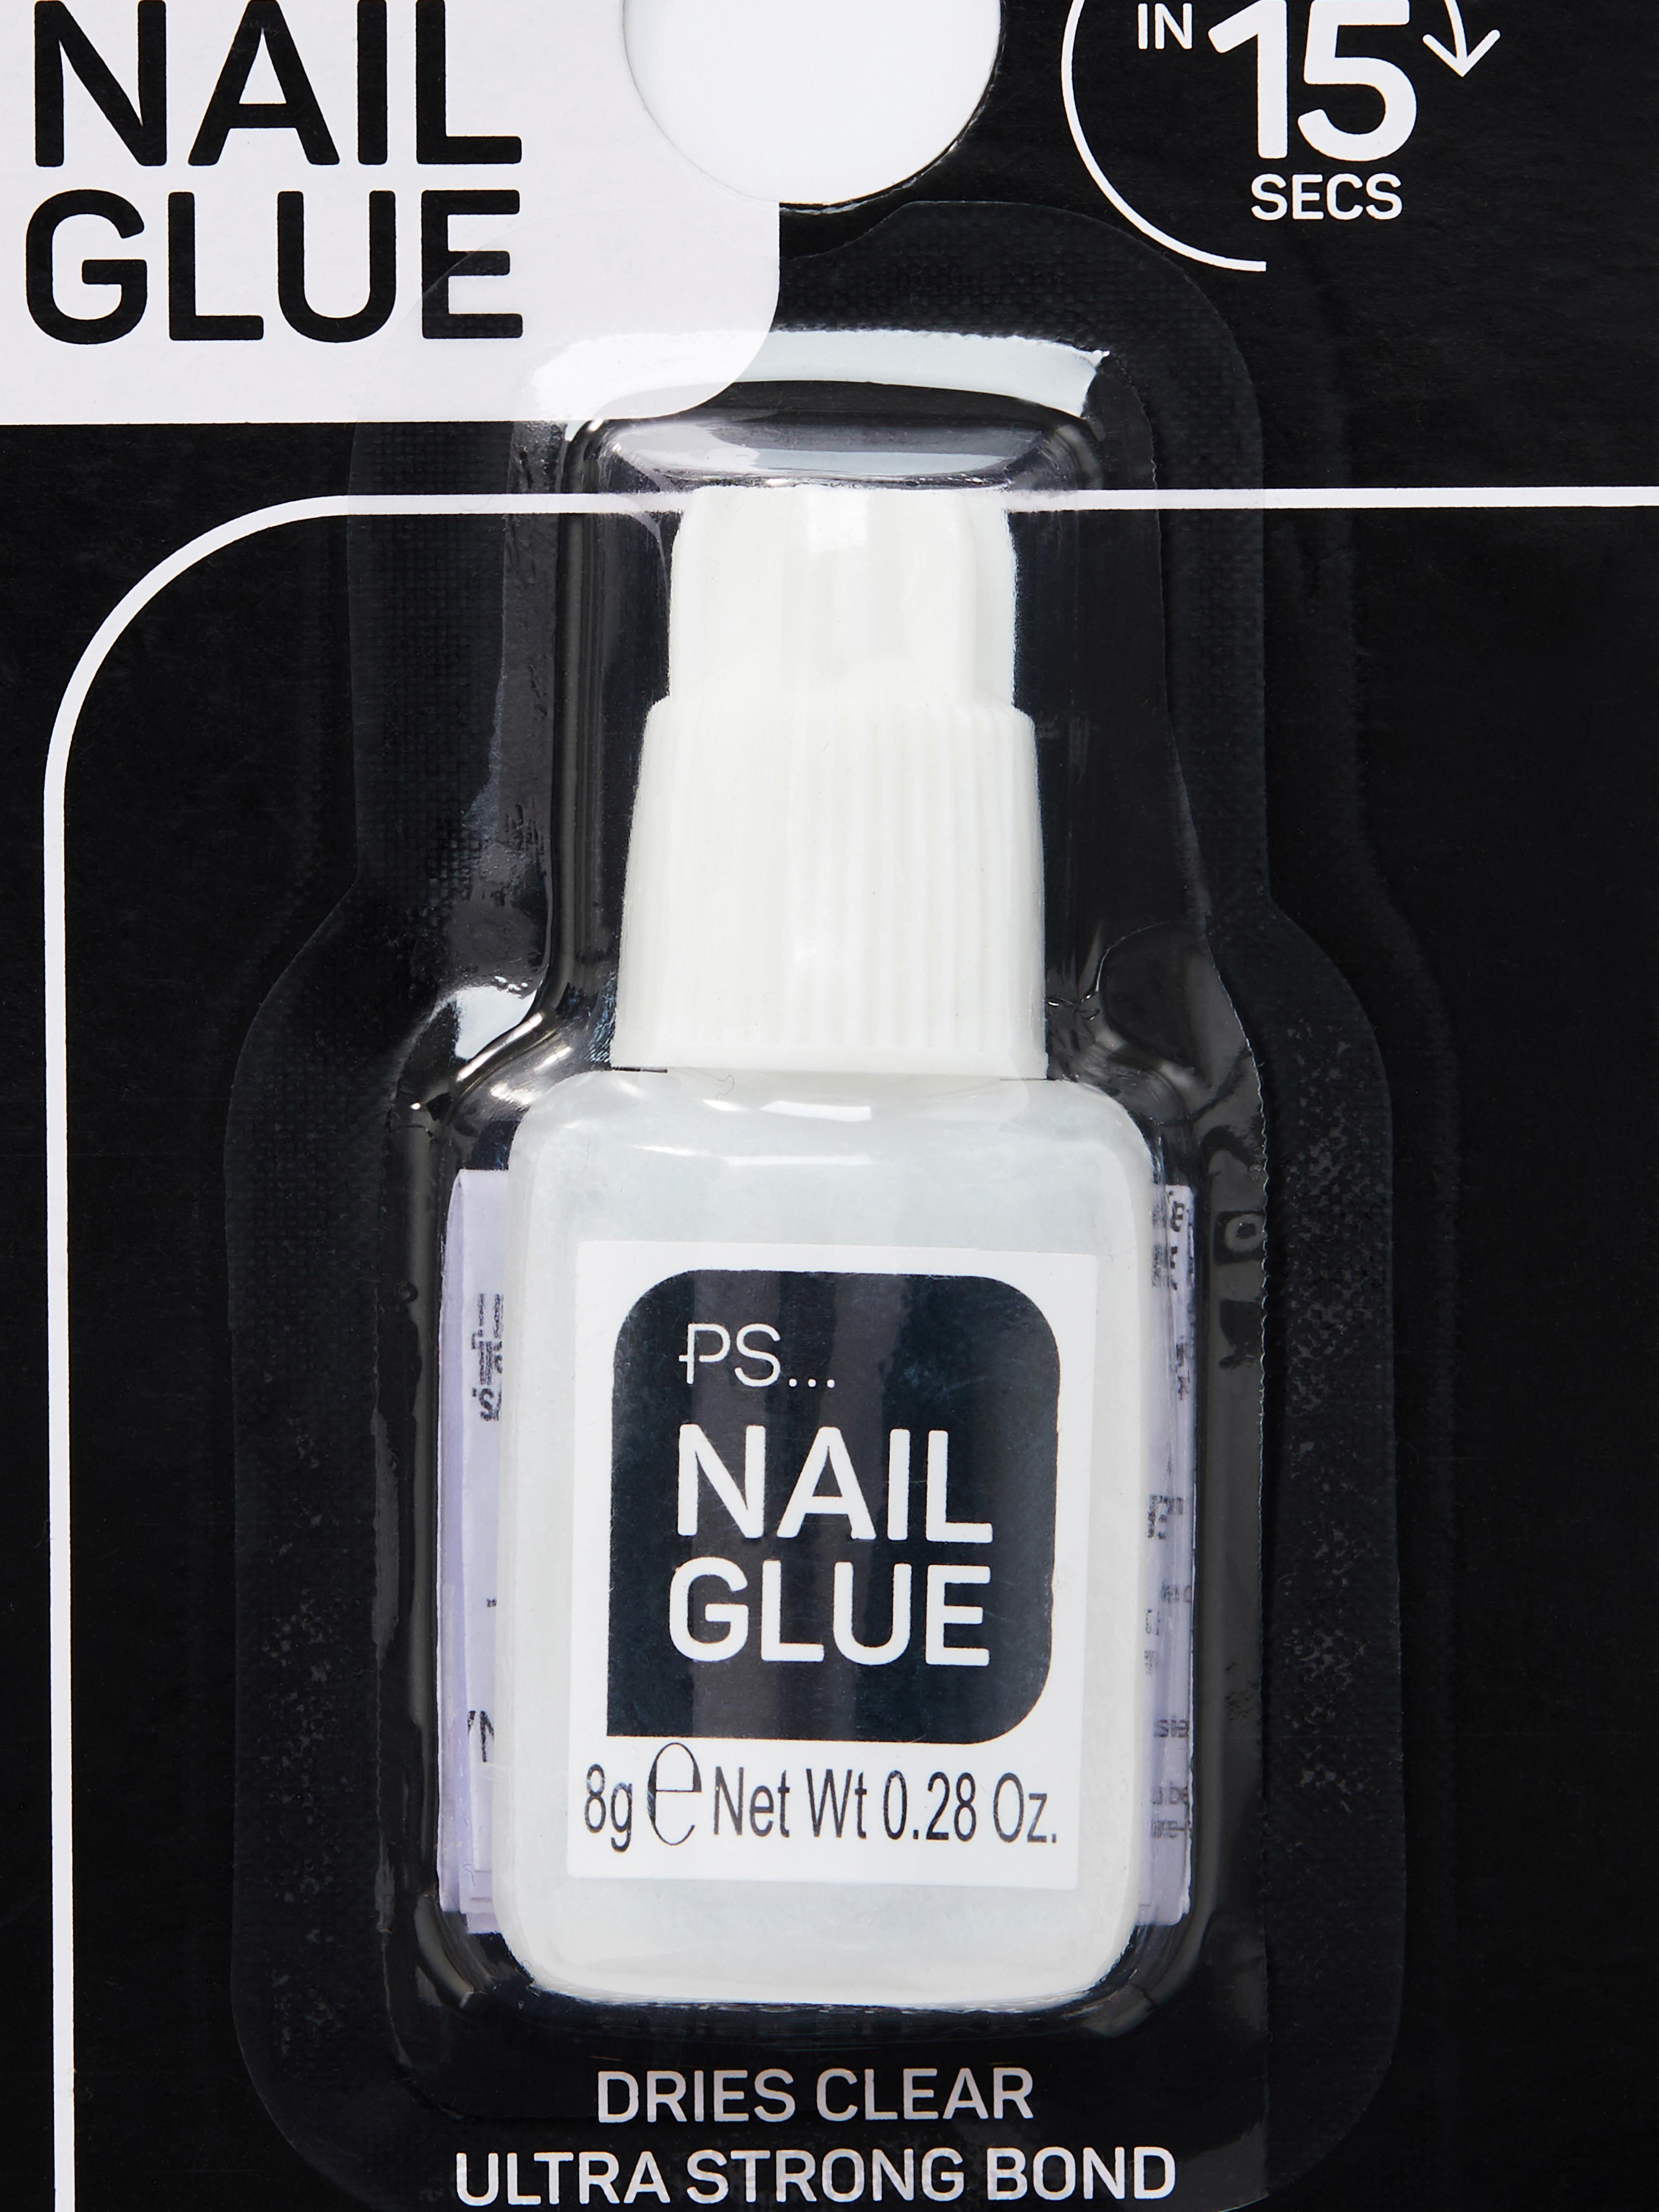 8g Nail Glue